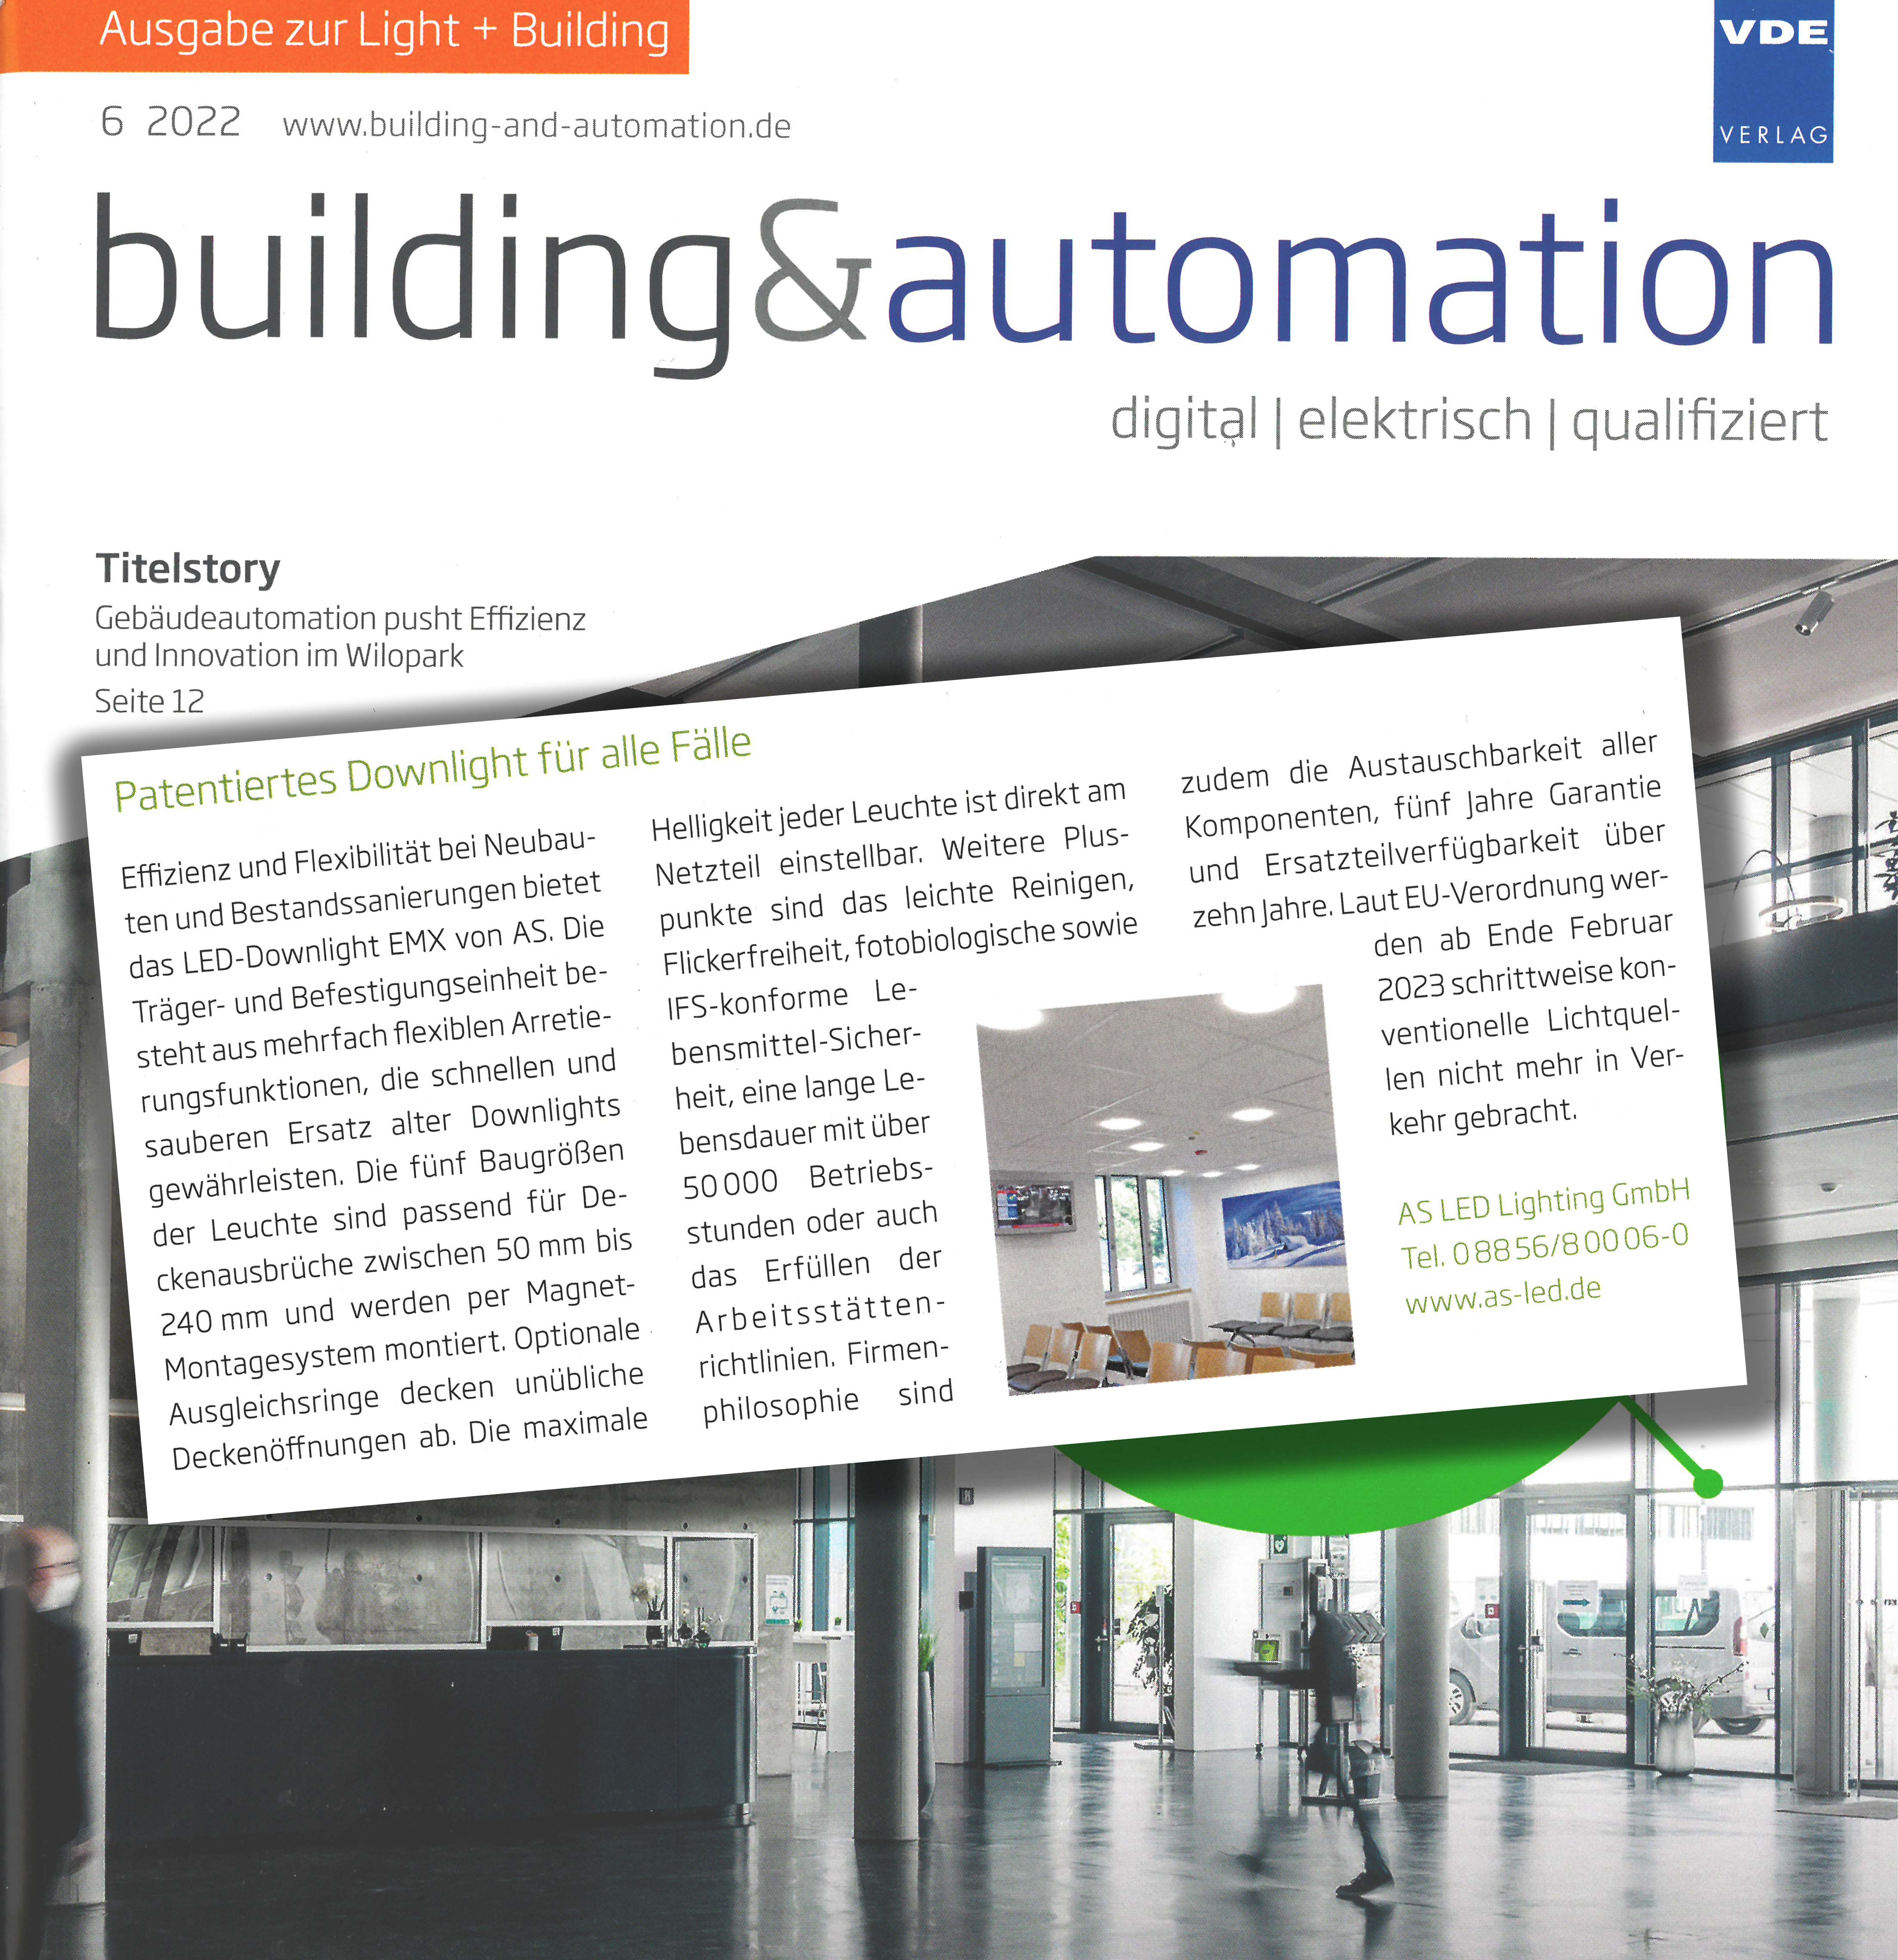 VDE Building and Automation bringt Bericht über das patentierte Downlight für alle Fälle